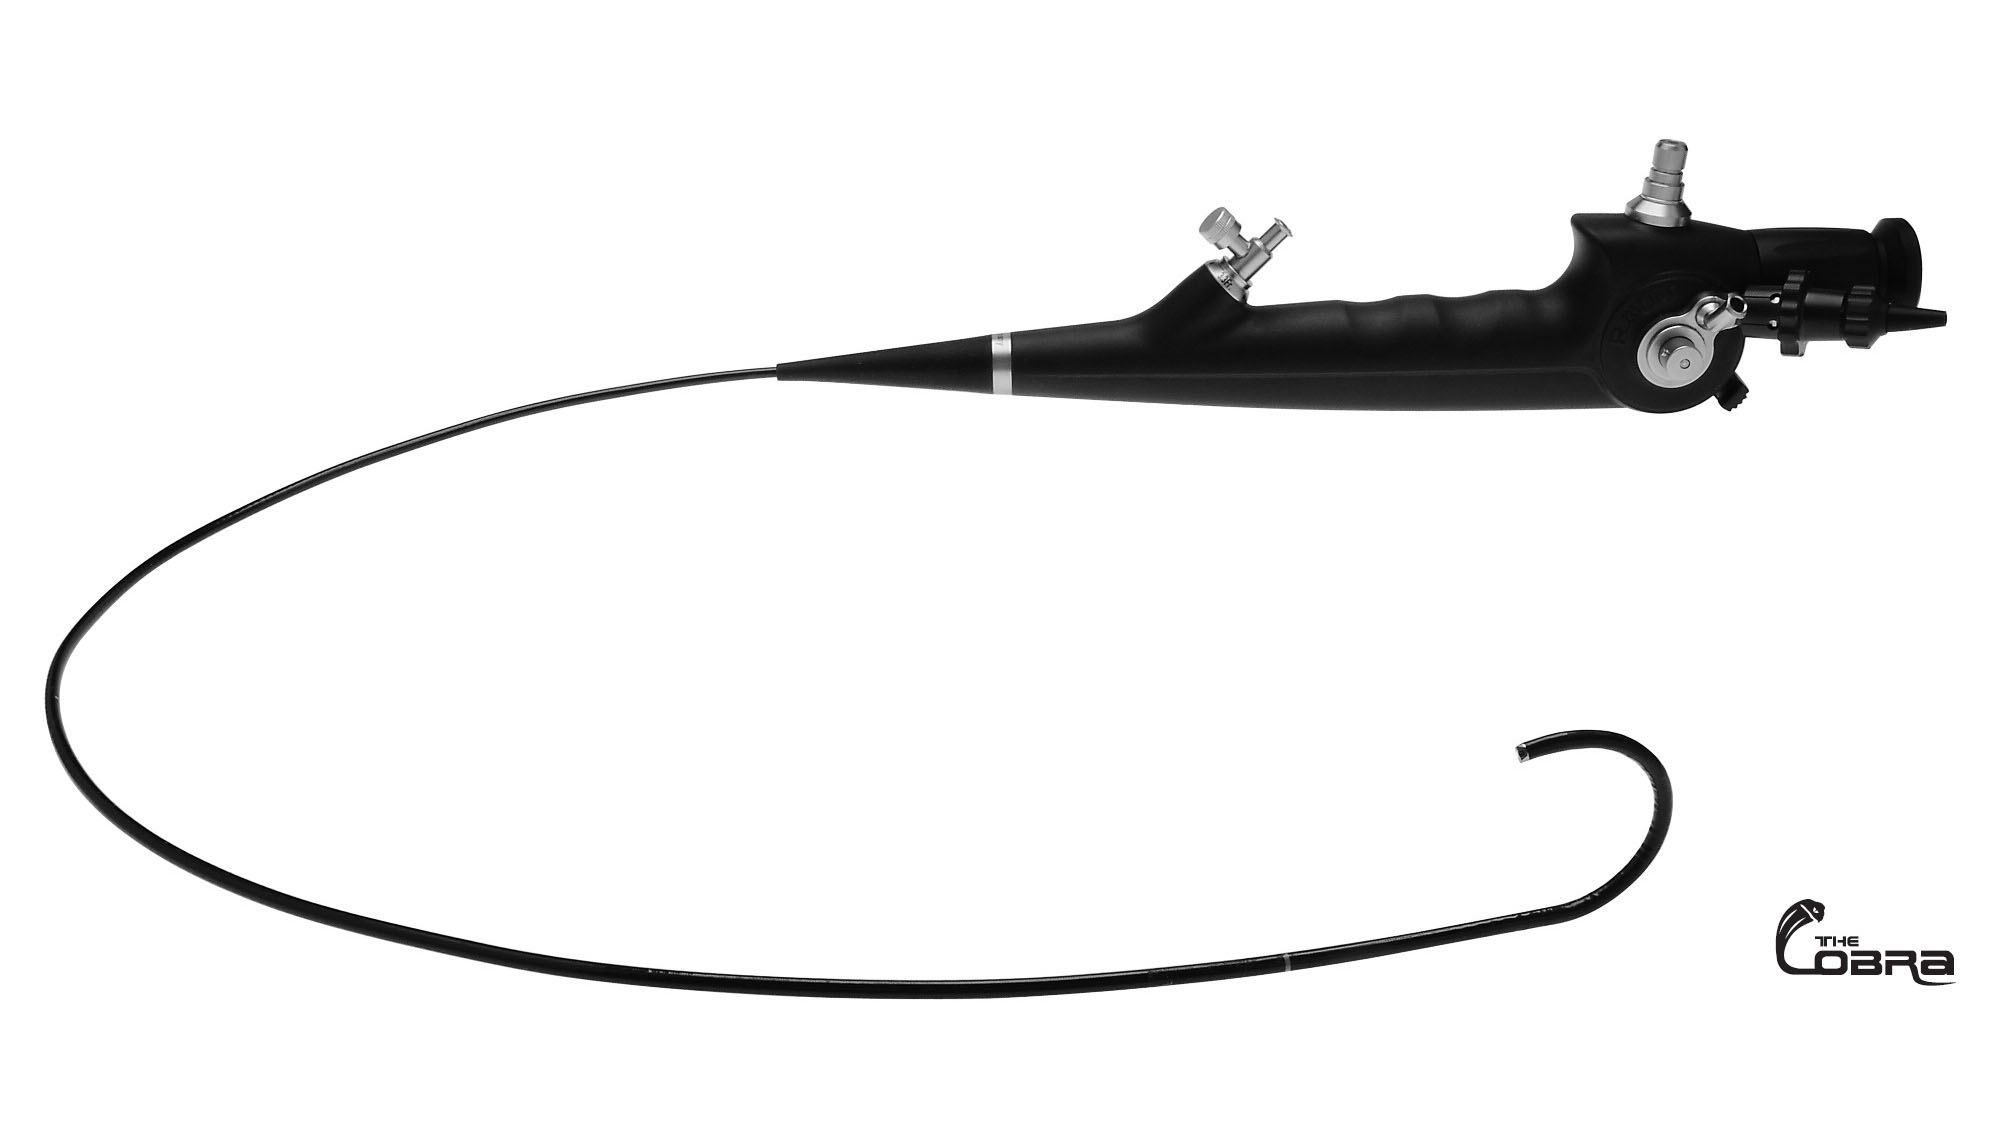 Двухканальный гибкий фиброволоконный уретерореноскоп с непрерывной ирригацией для лазерных применений «The COBRA» 6 / 9,9 Шр.